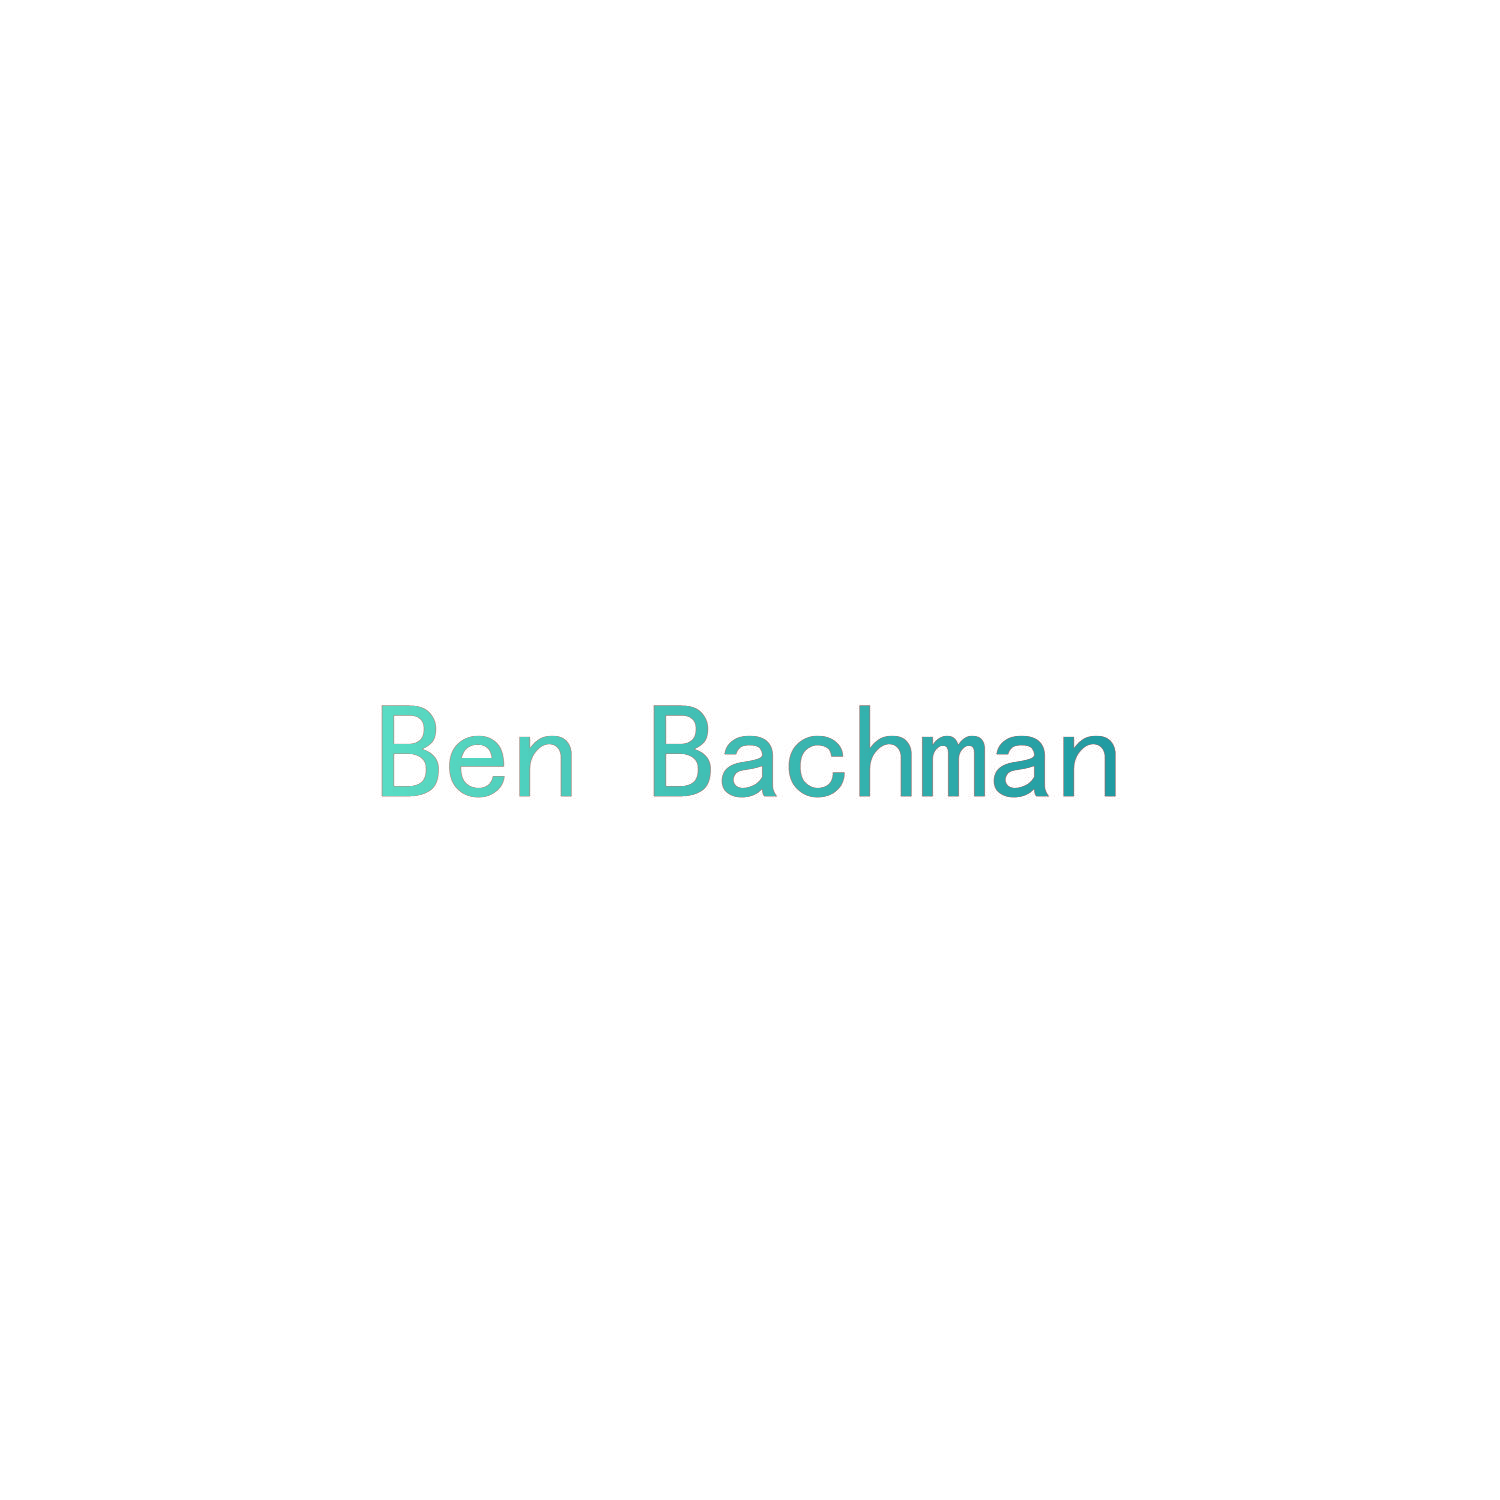 BEN BACHMAN